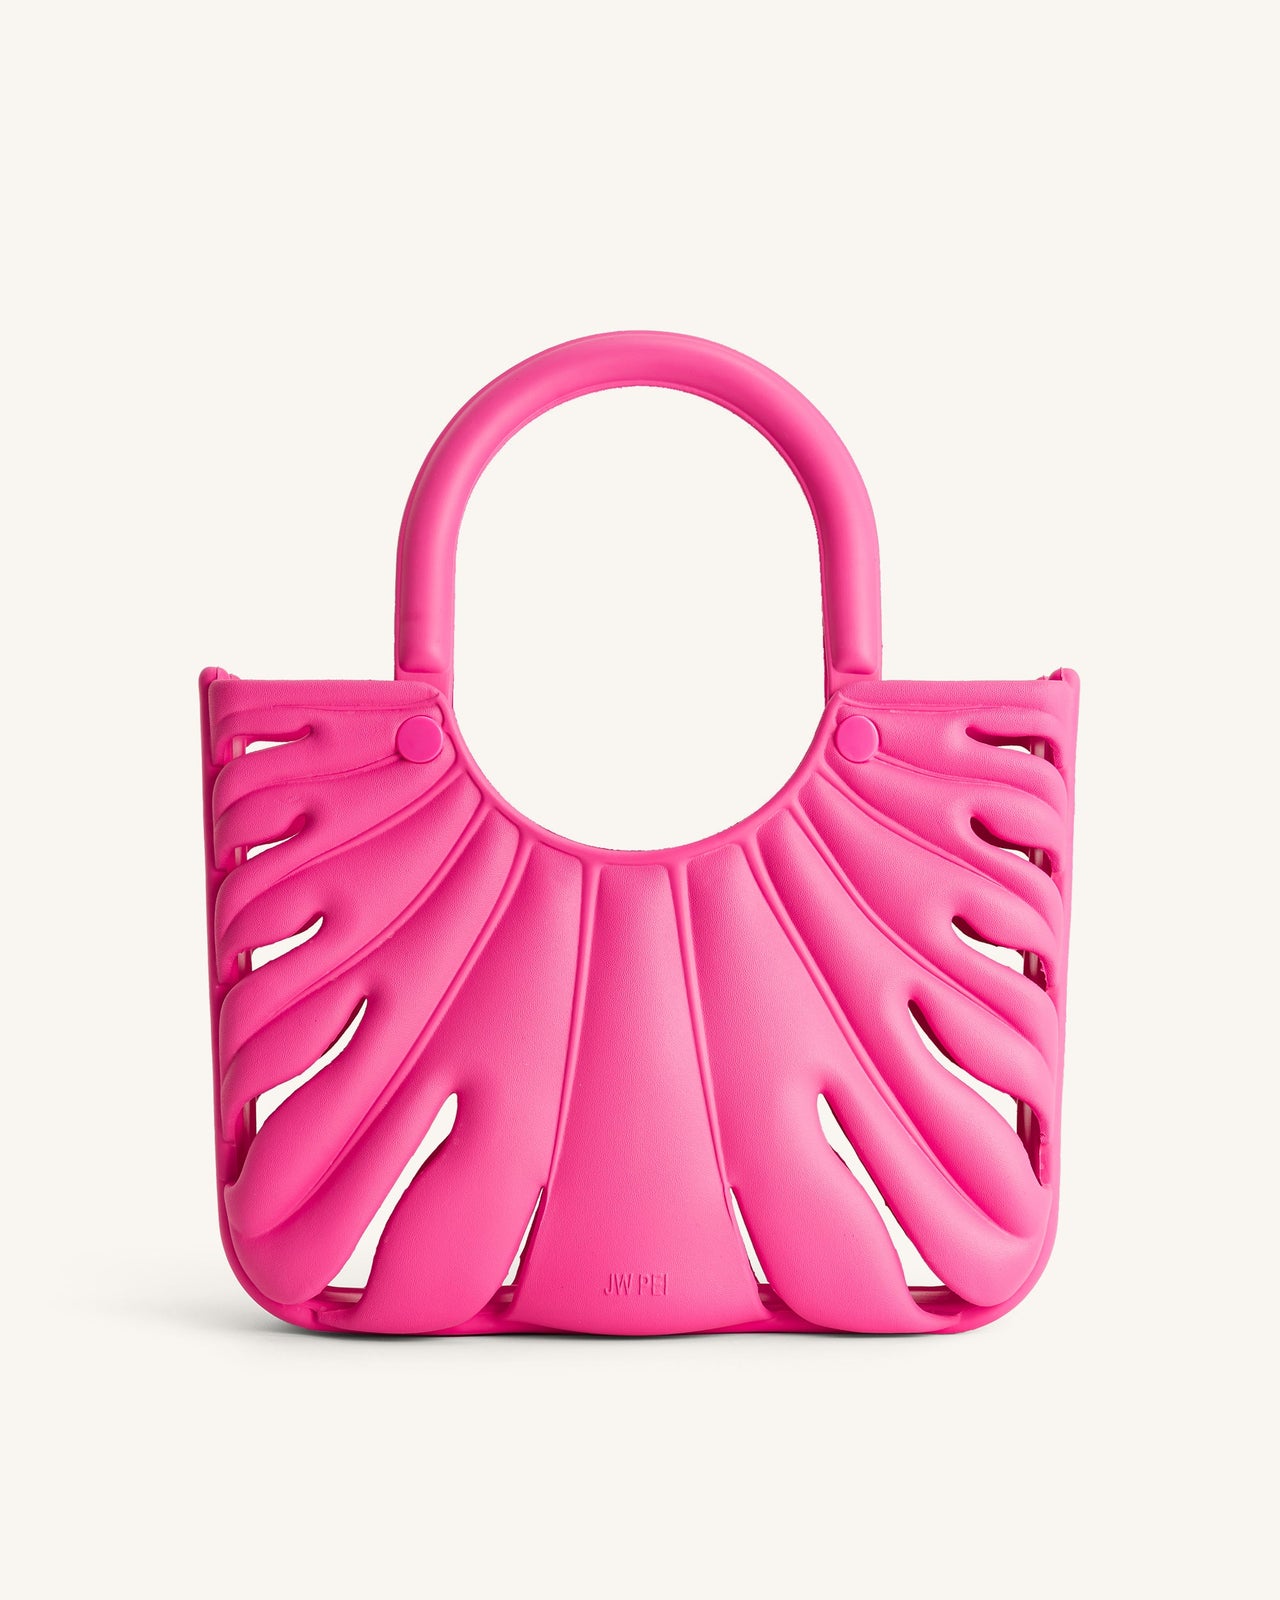 Faye Leaf Beach Bag - Bright Pink